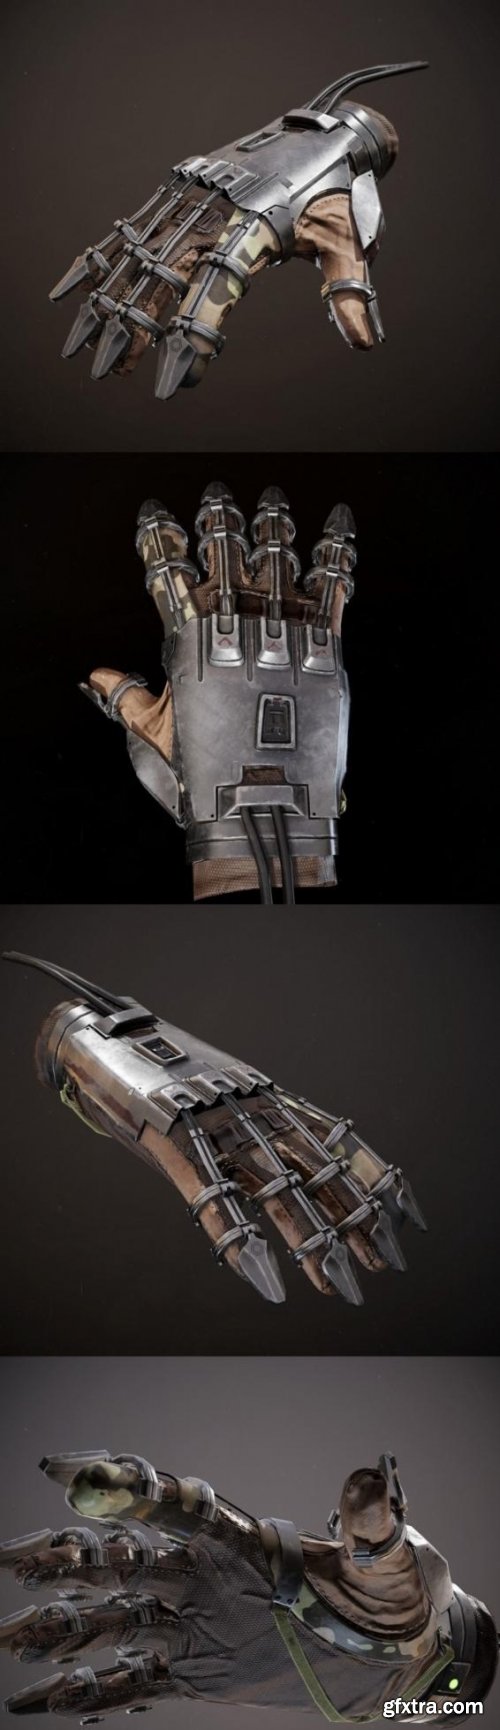 Military exoskeleton glove